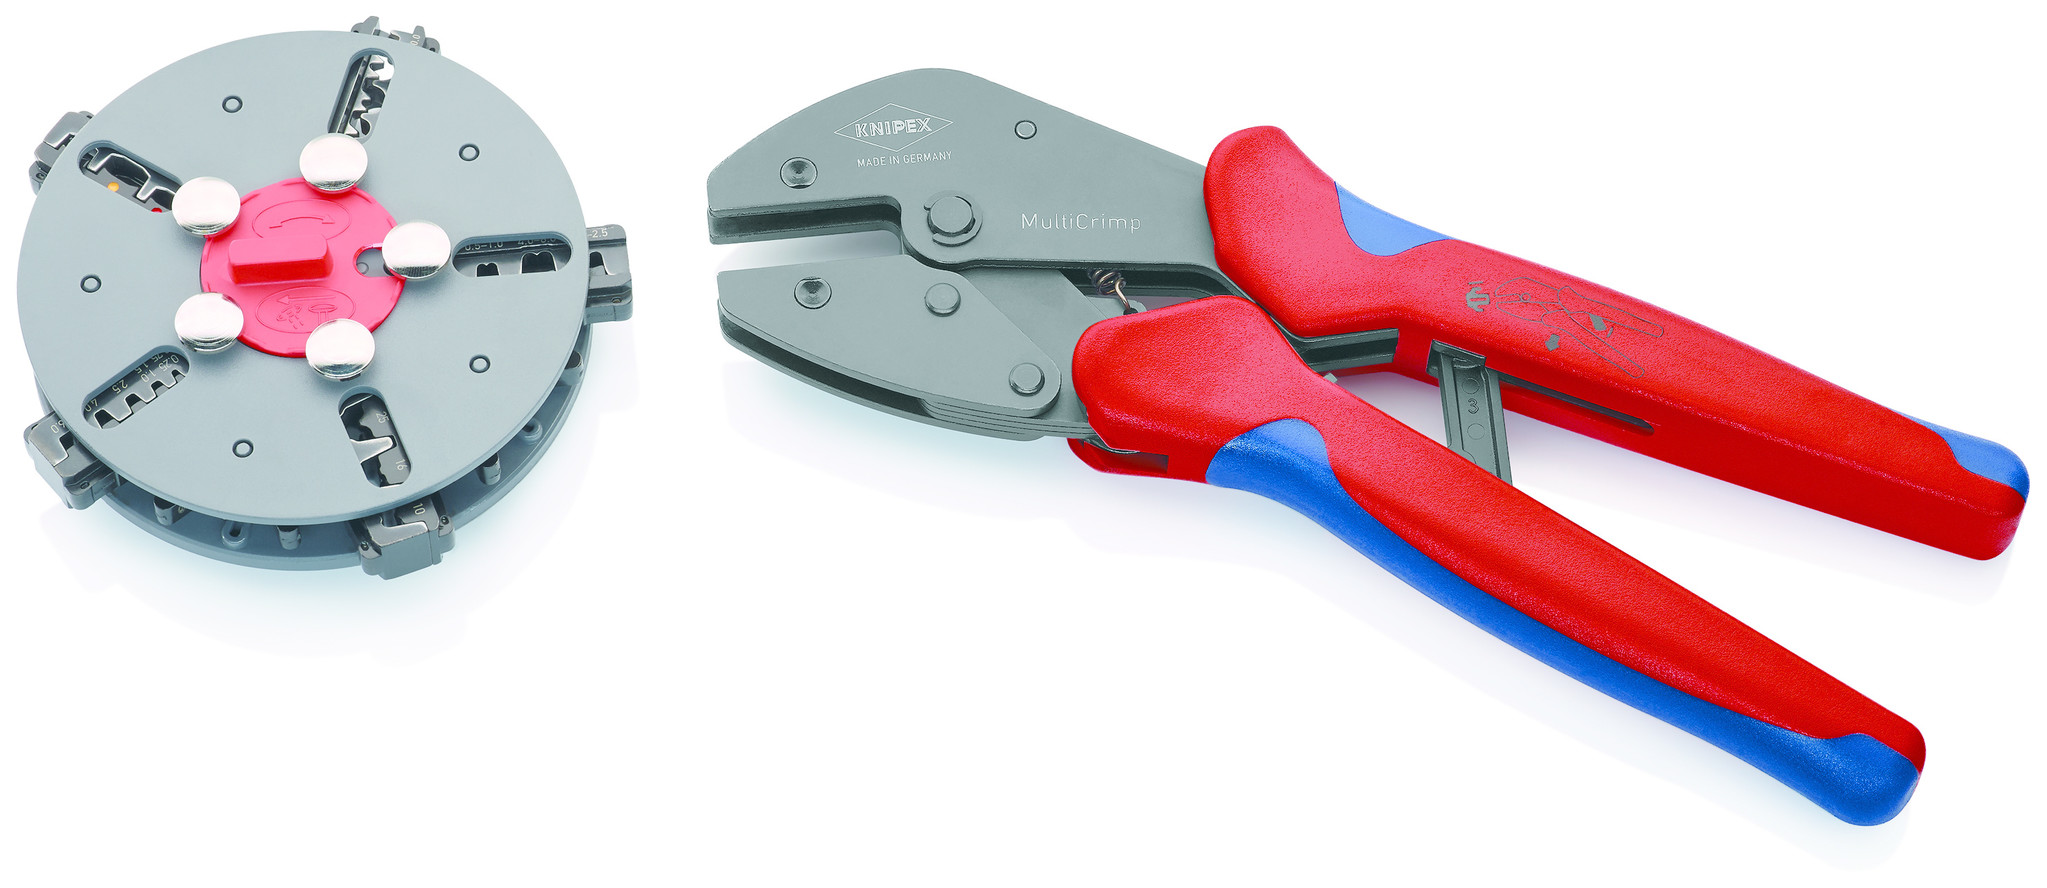 MultiCrimp® Krimptang van Knipex met en handige wissellader Cable-Engineer.nl